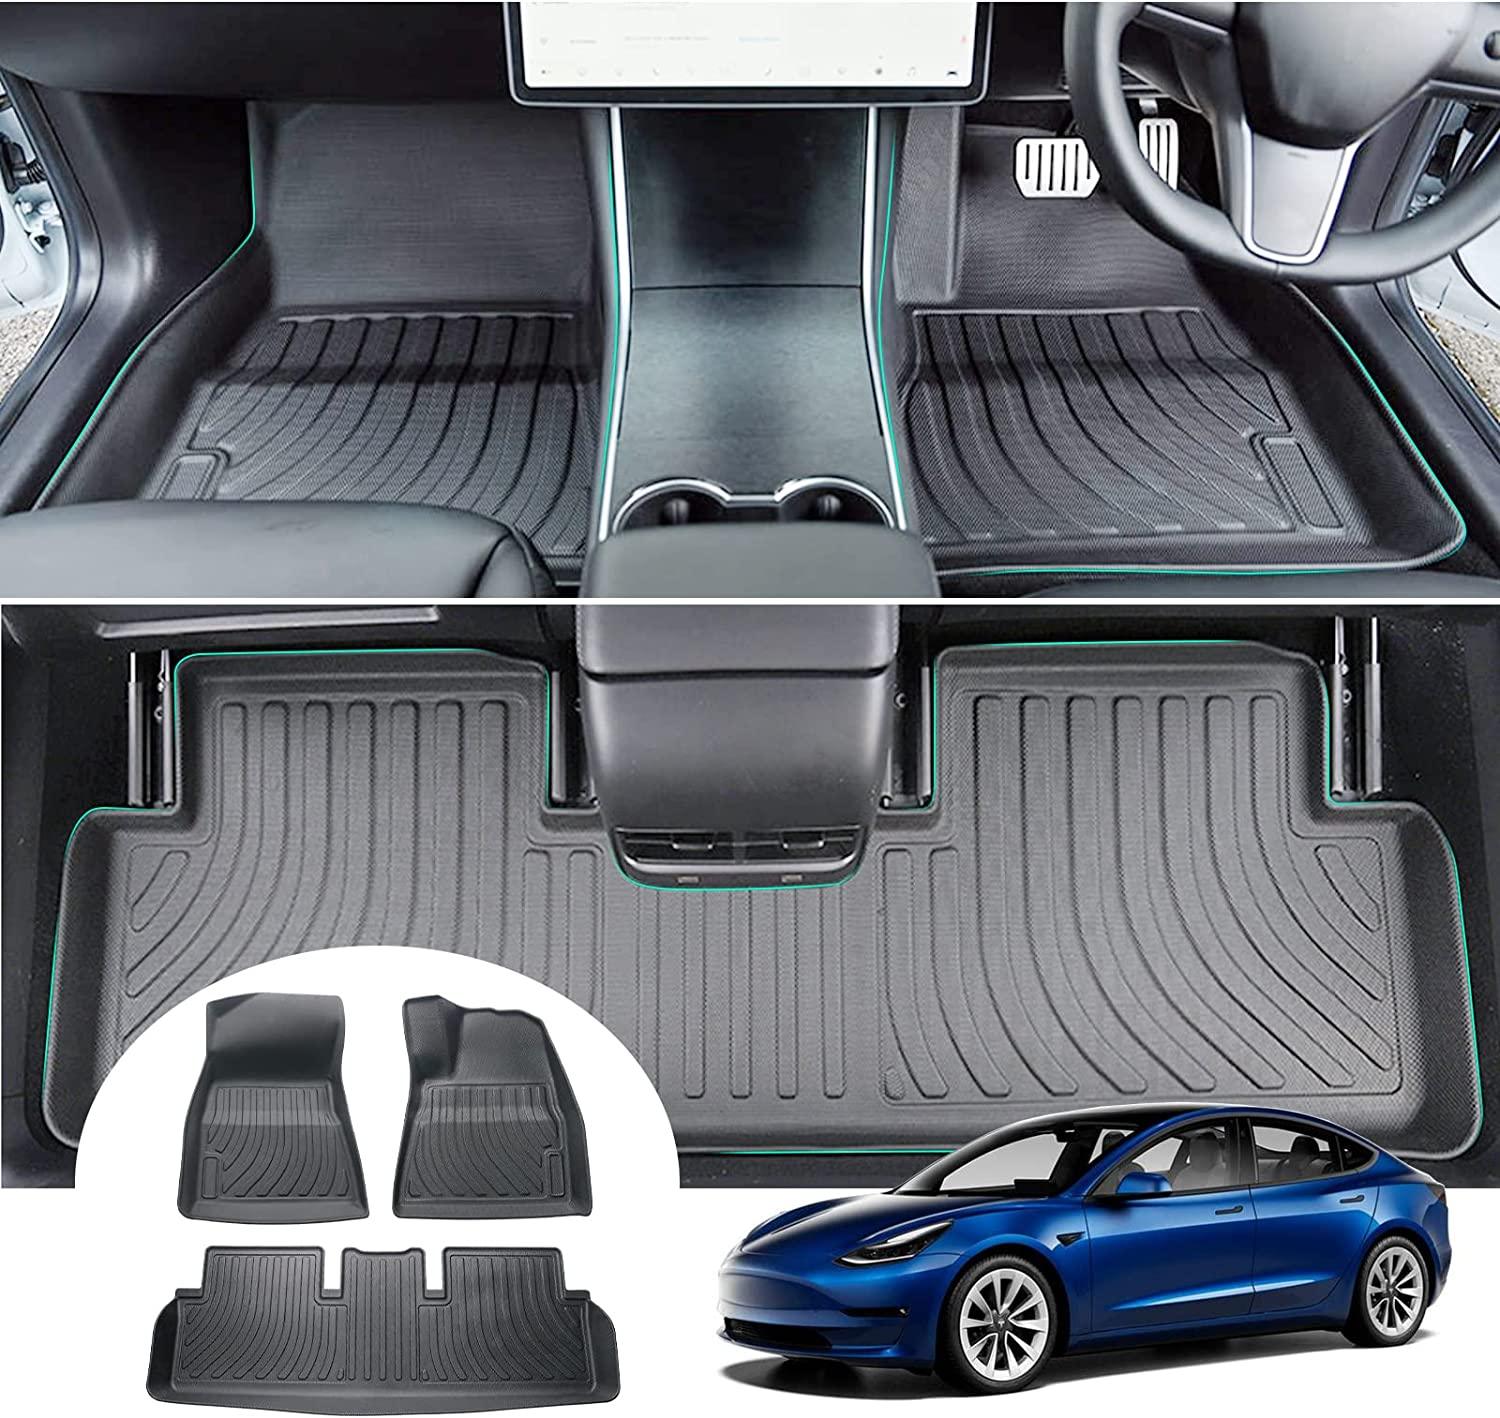 All-weather floor mats Tesla Model 3 —